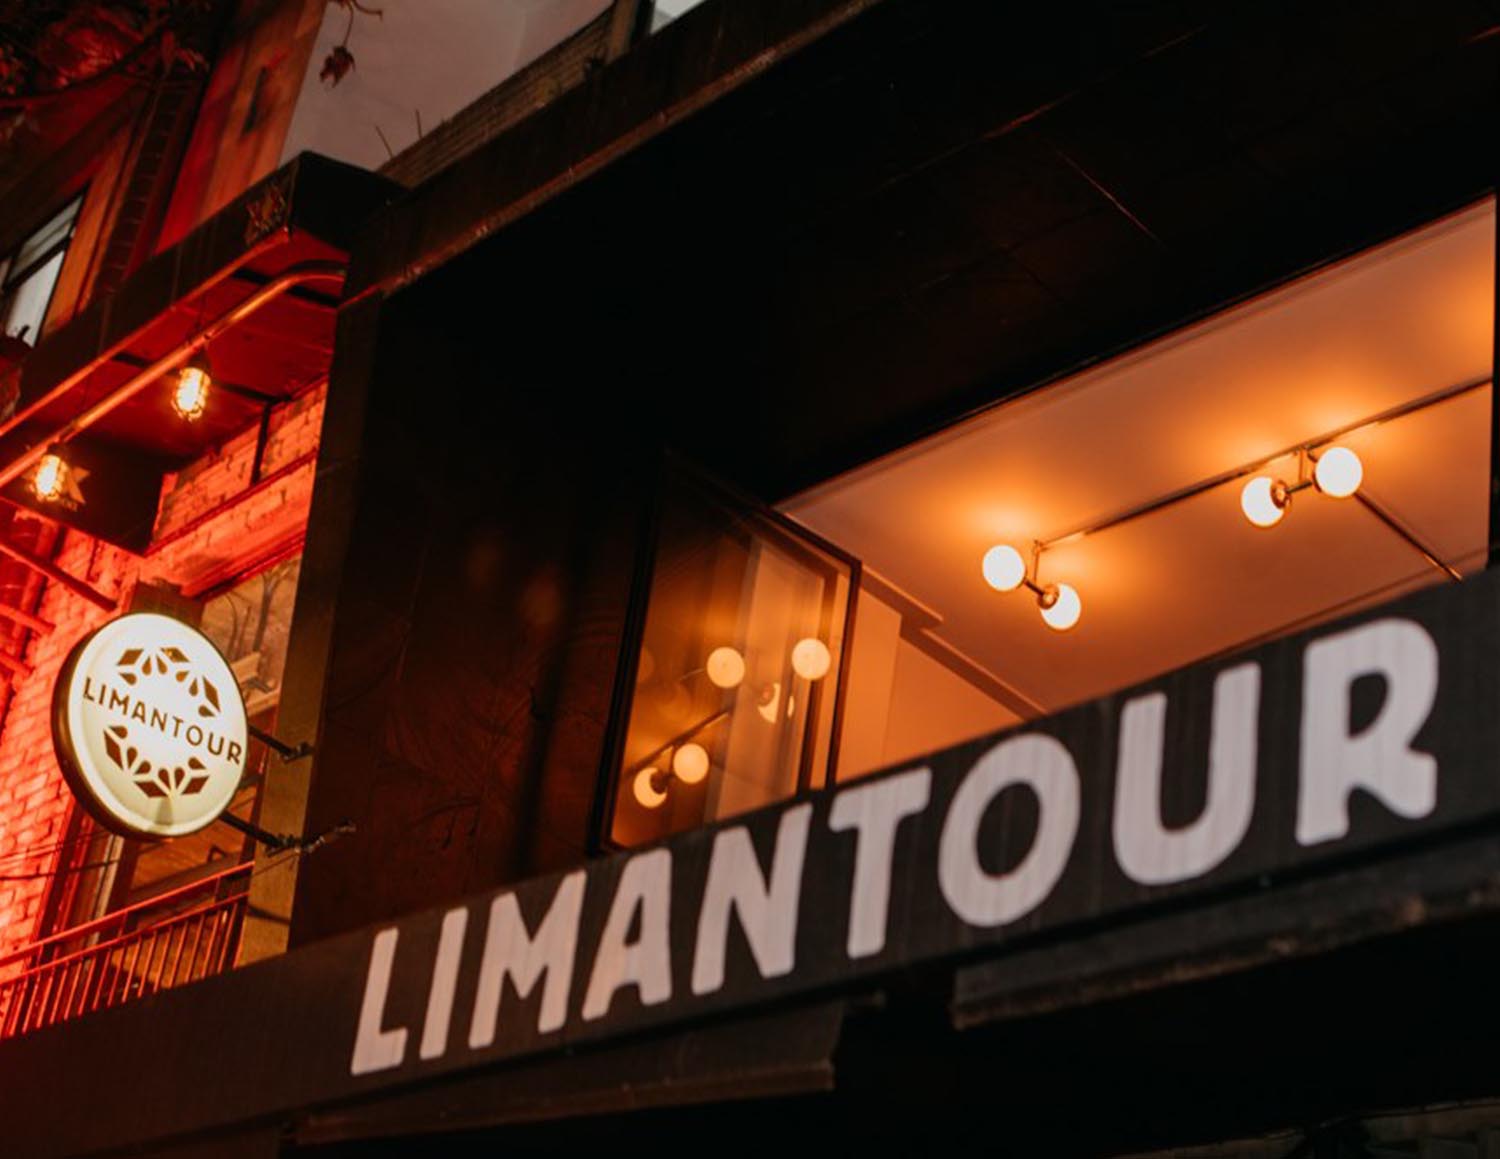 Limantour 50 best bars 2019